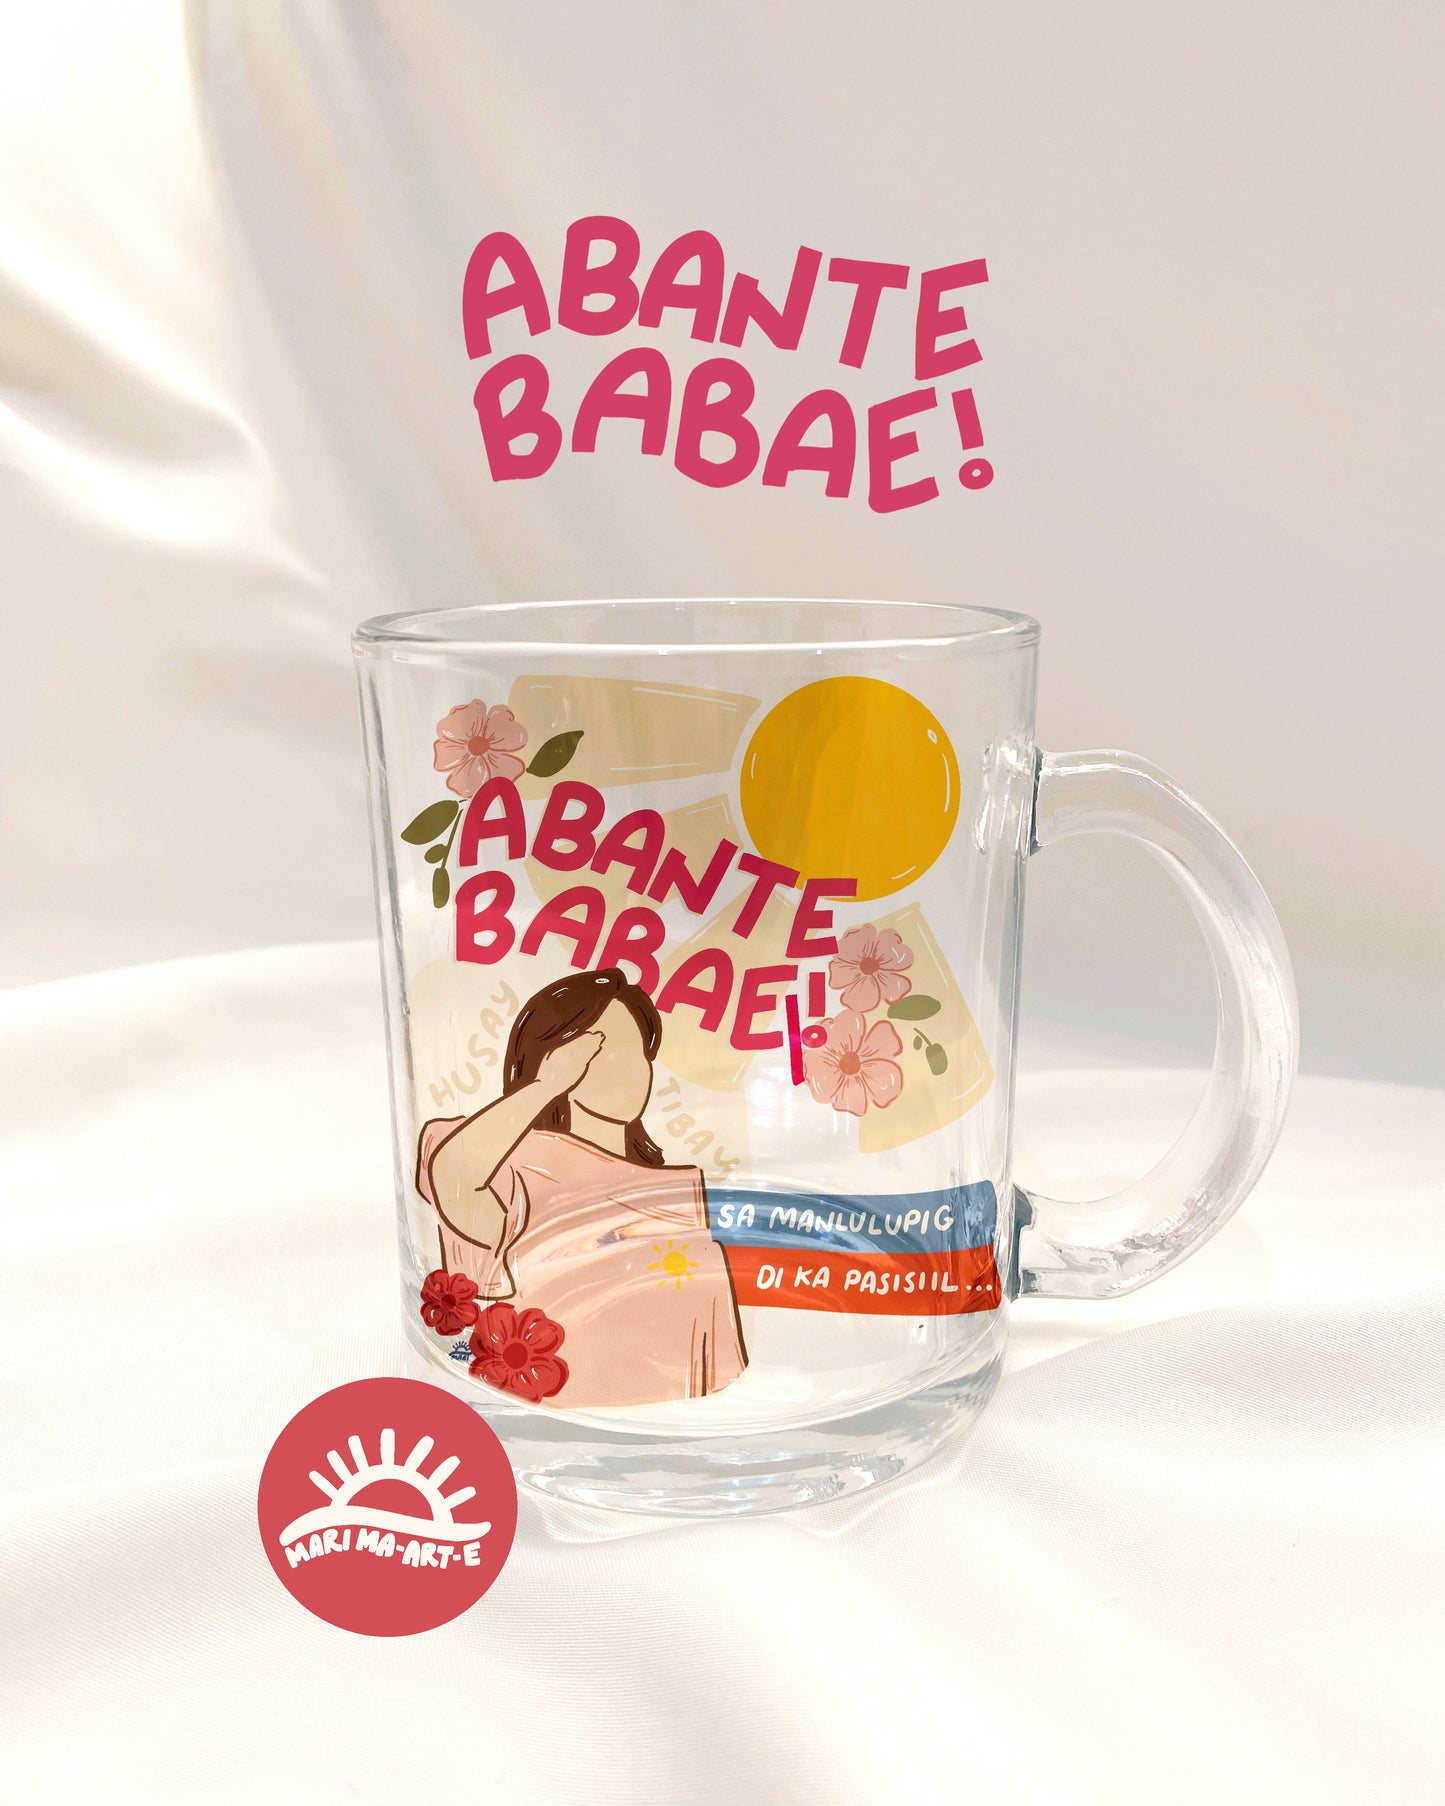 ABANTE BABAE GLASS MUG